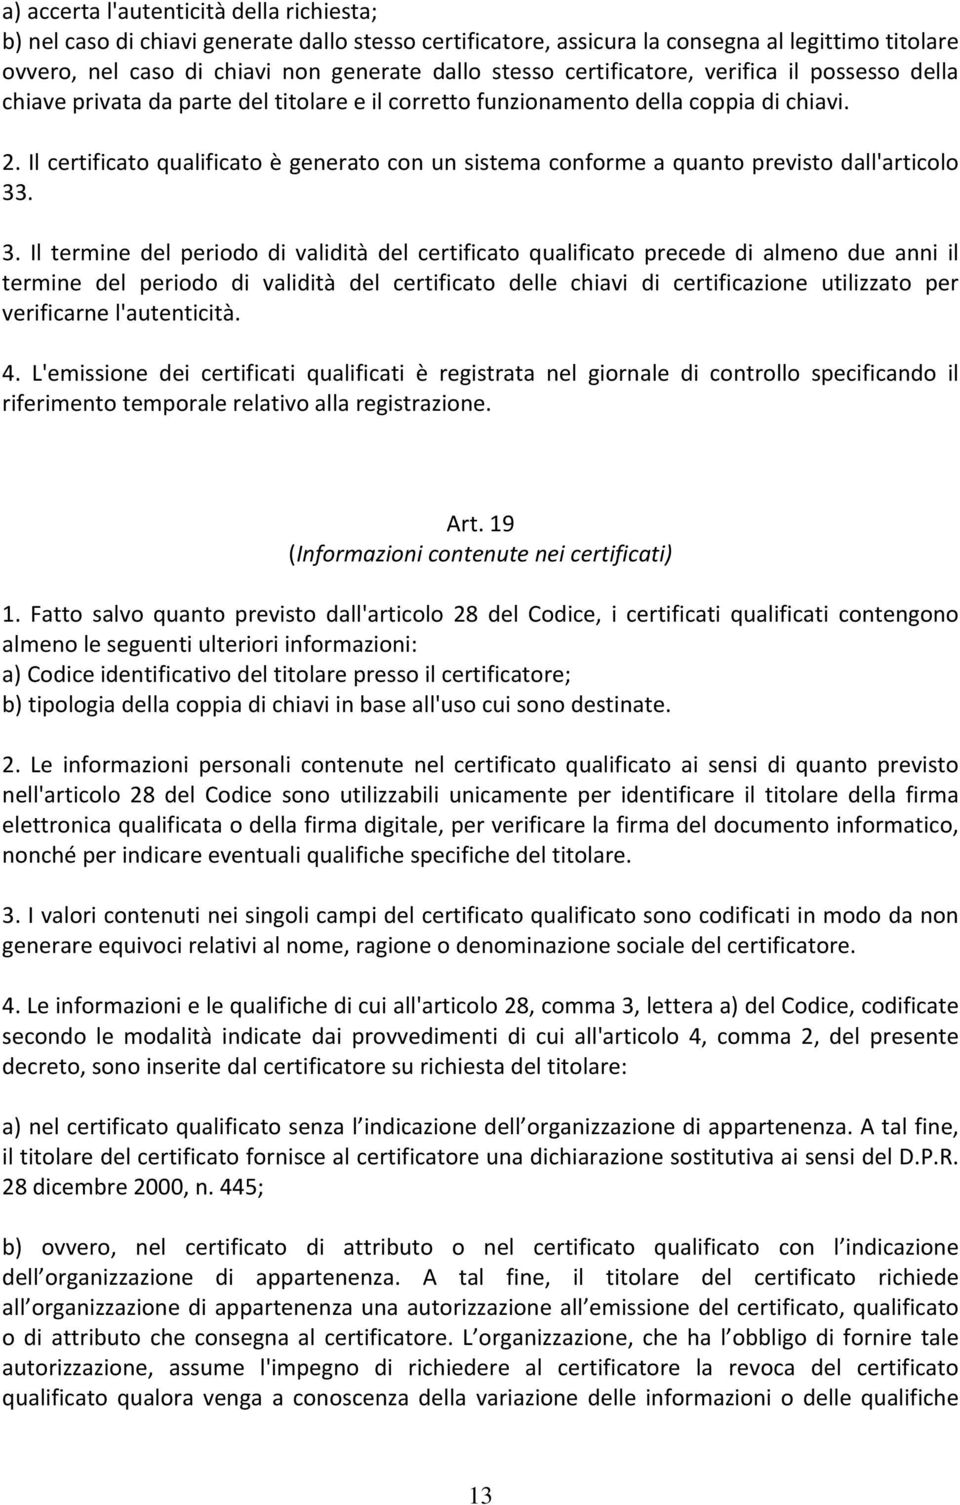 Il certificato qualificato è generato con un sistema conforme a quanto previsto dall'articolo 33